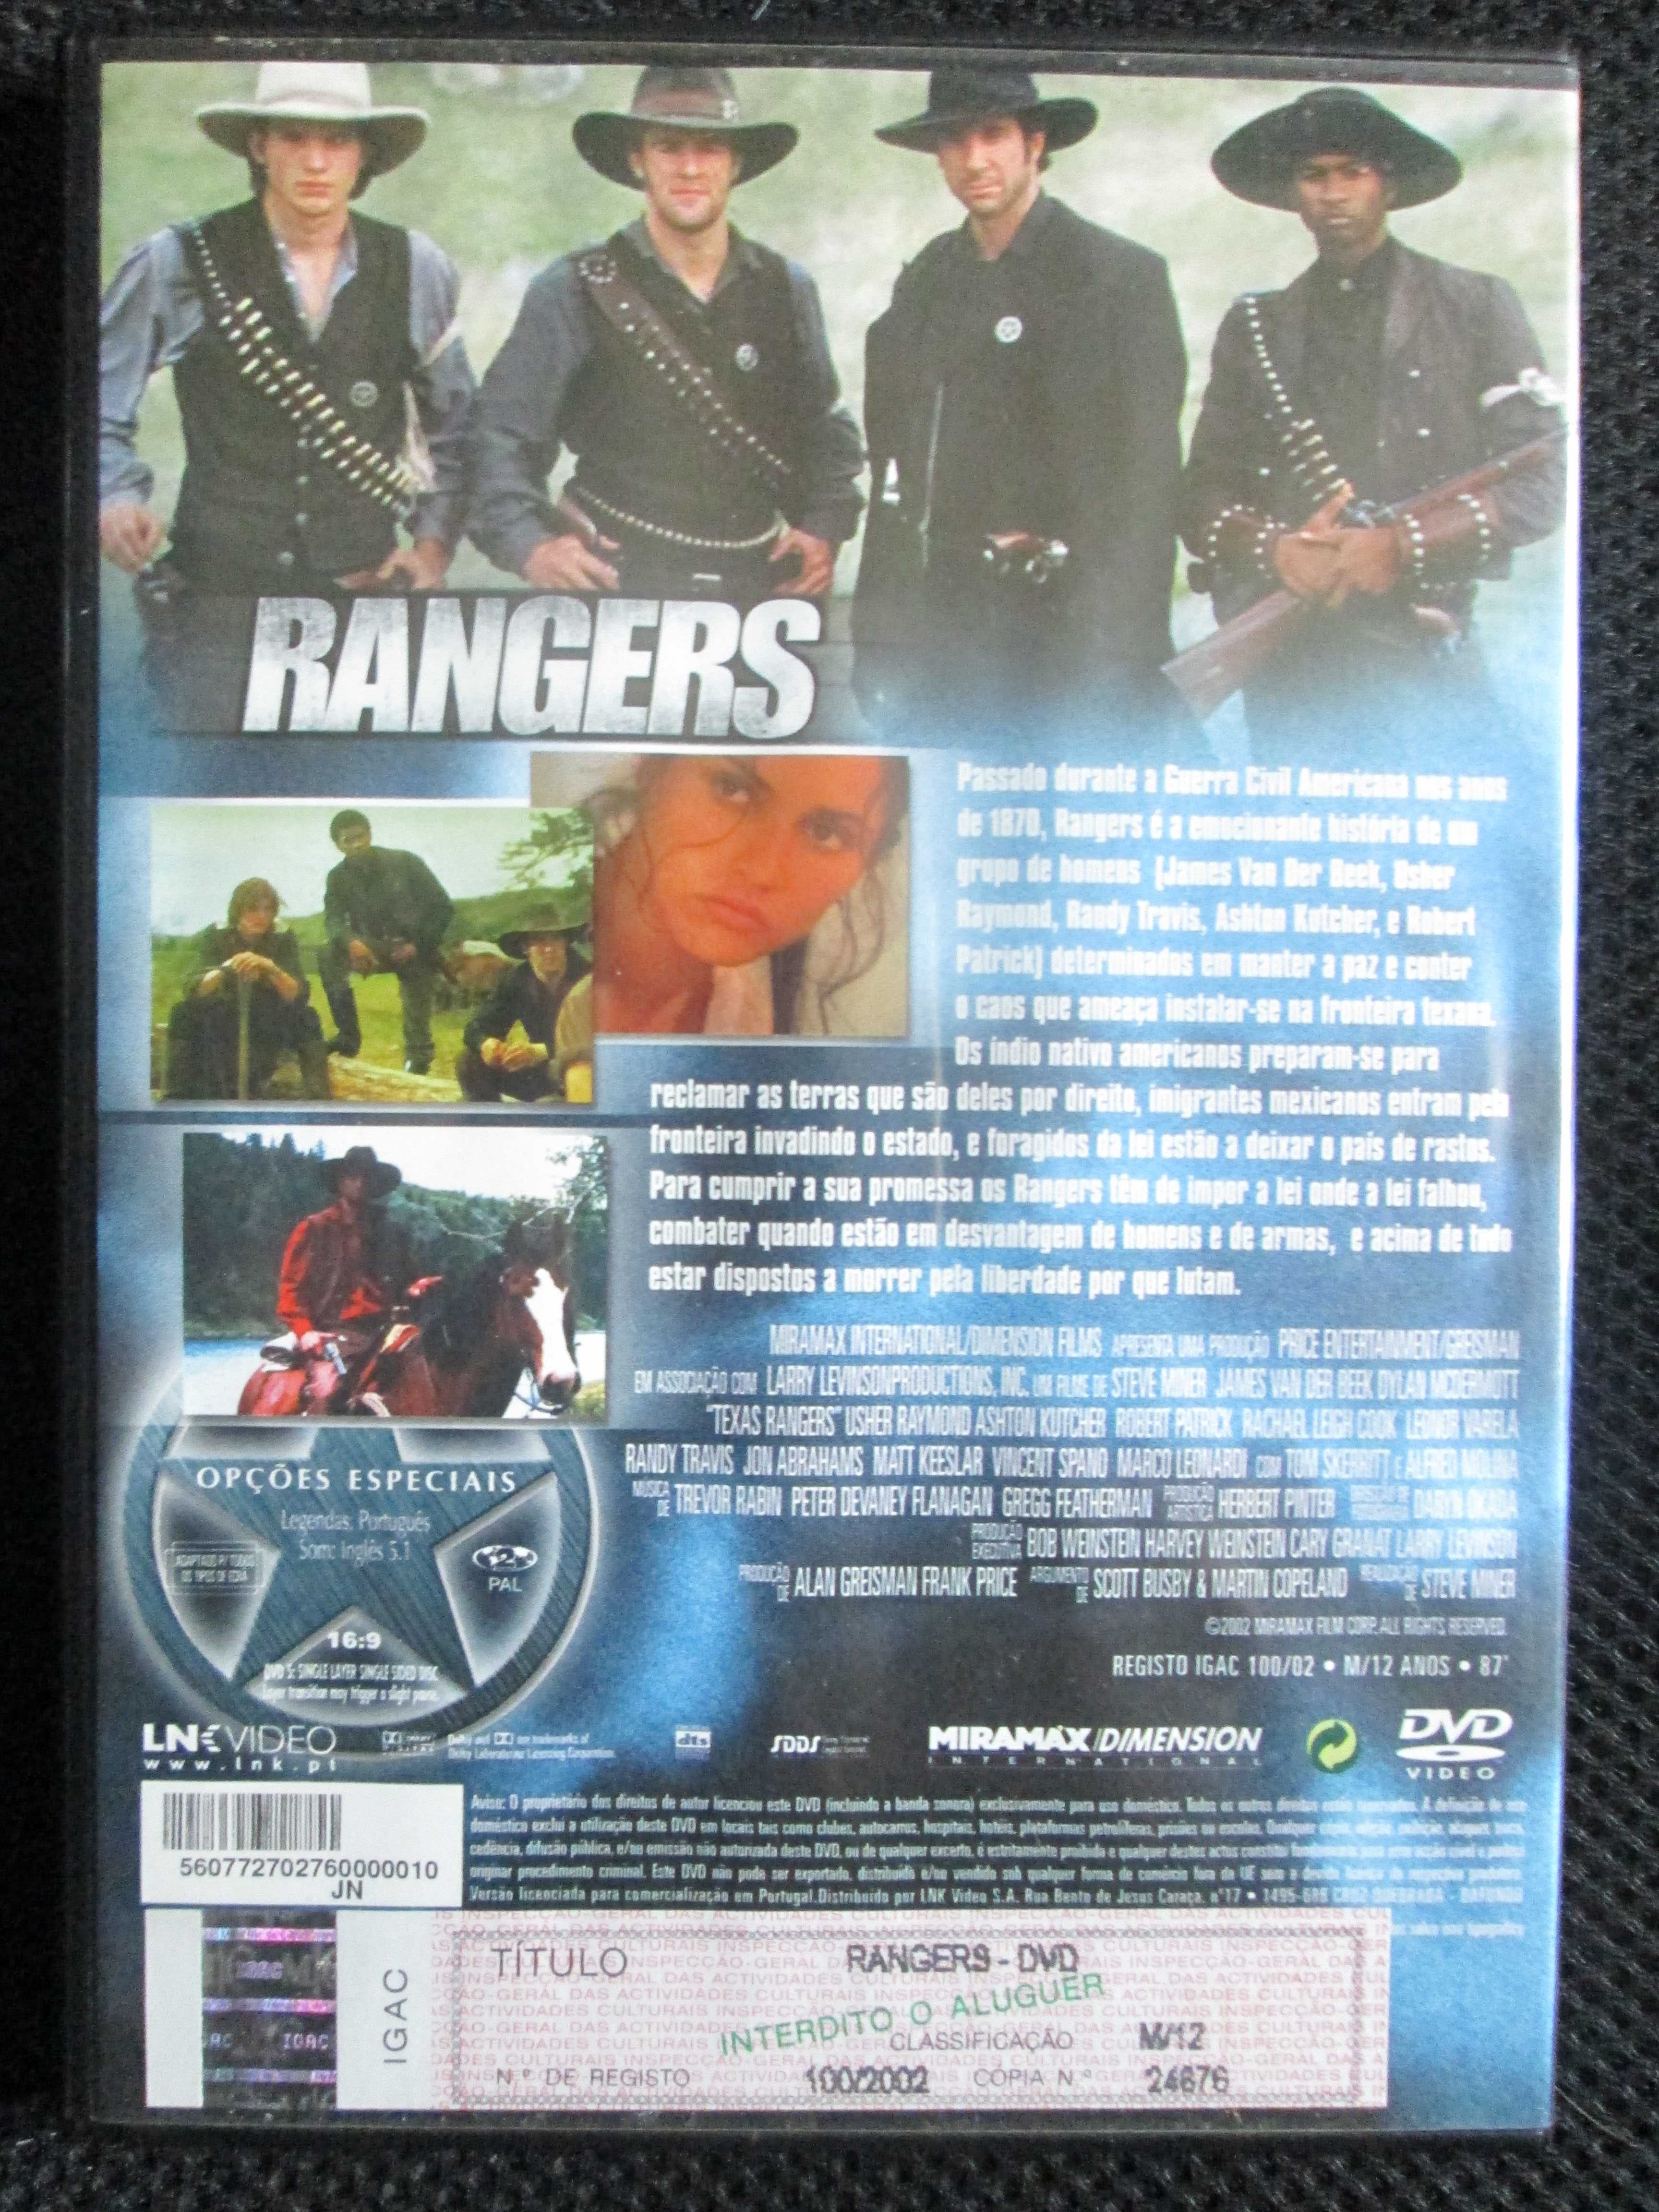 Rangers, com James Van Der Beek, Dylan McDermott, Usher Raymond